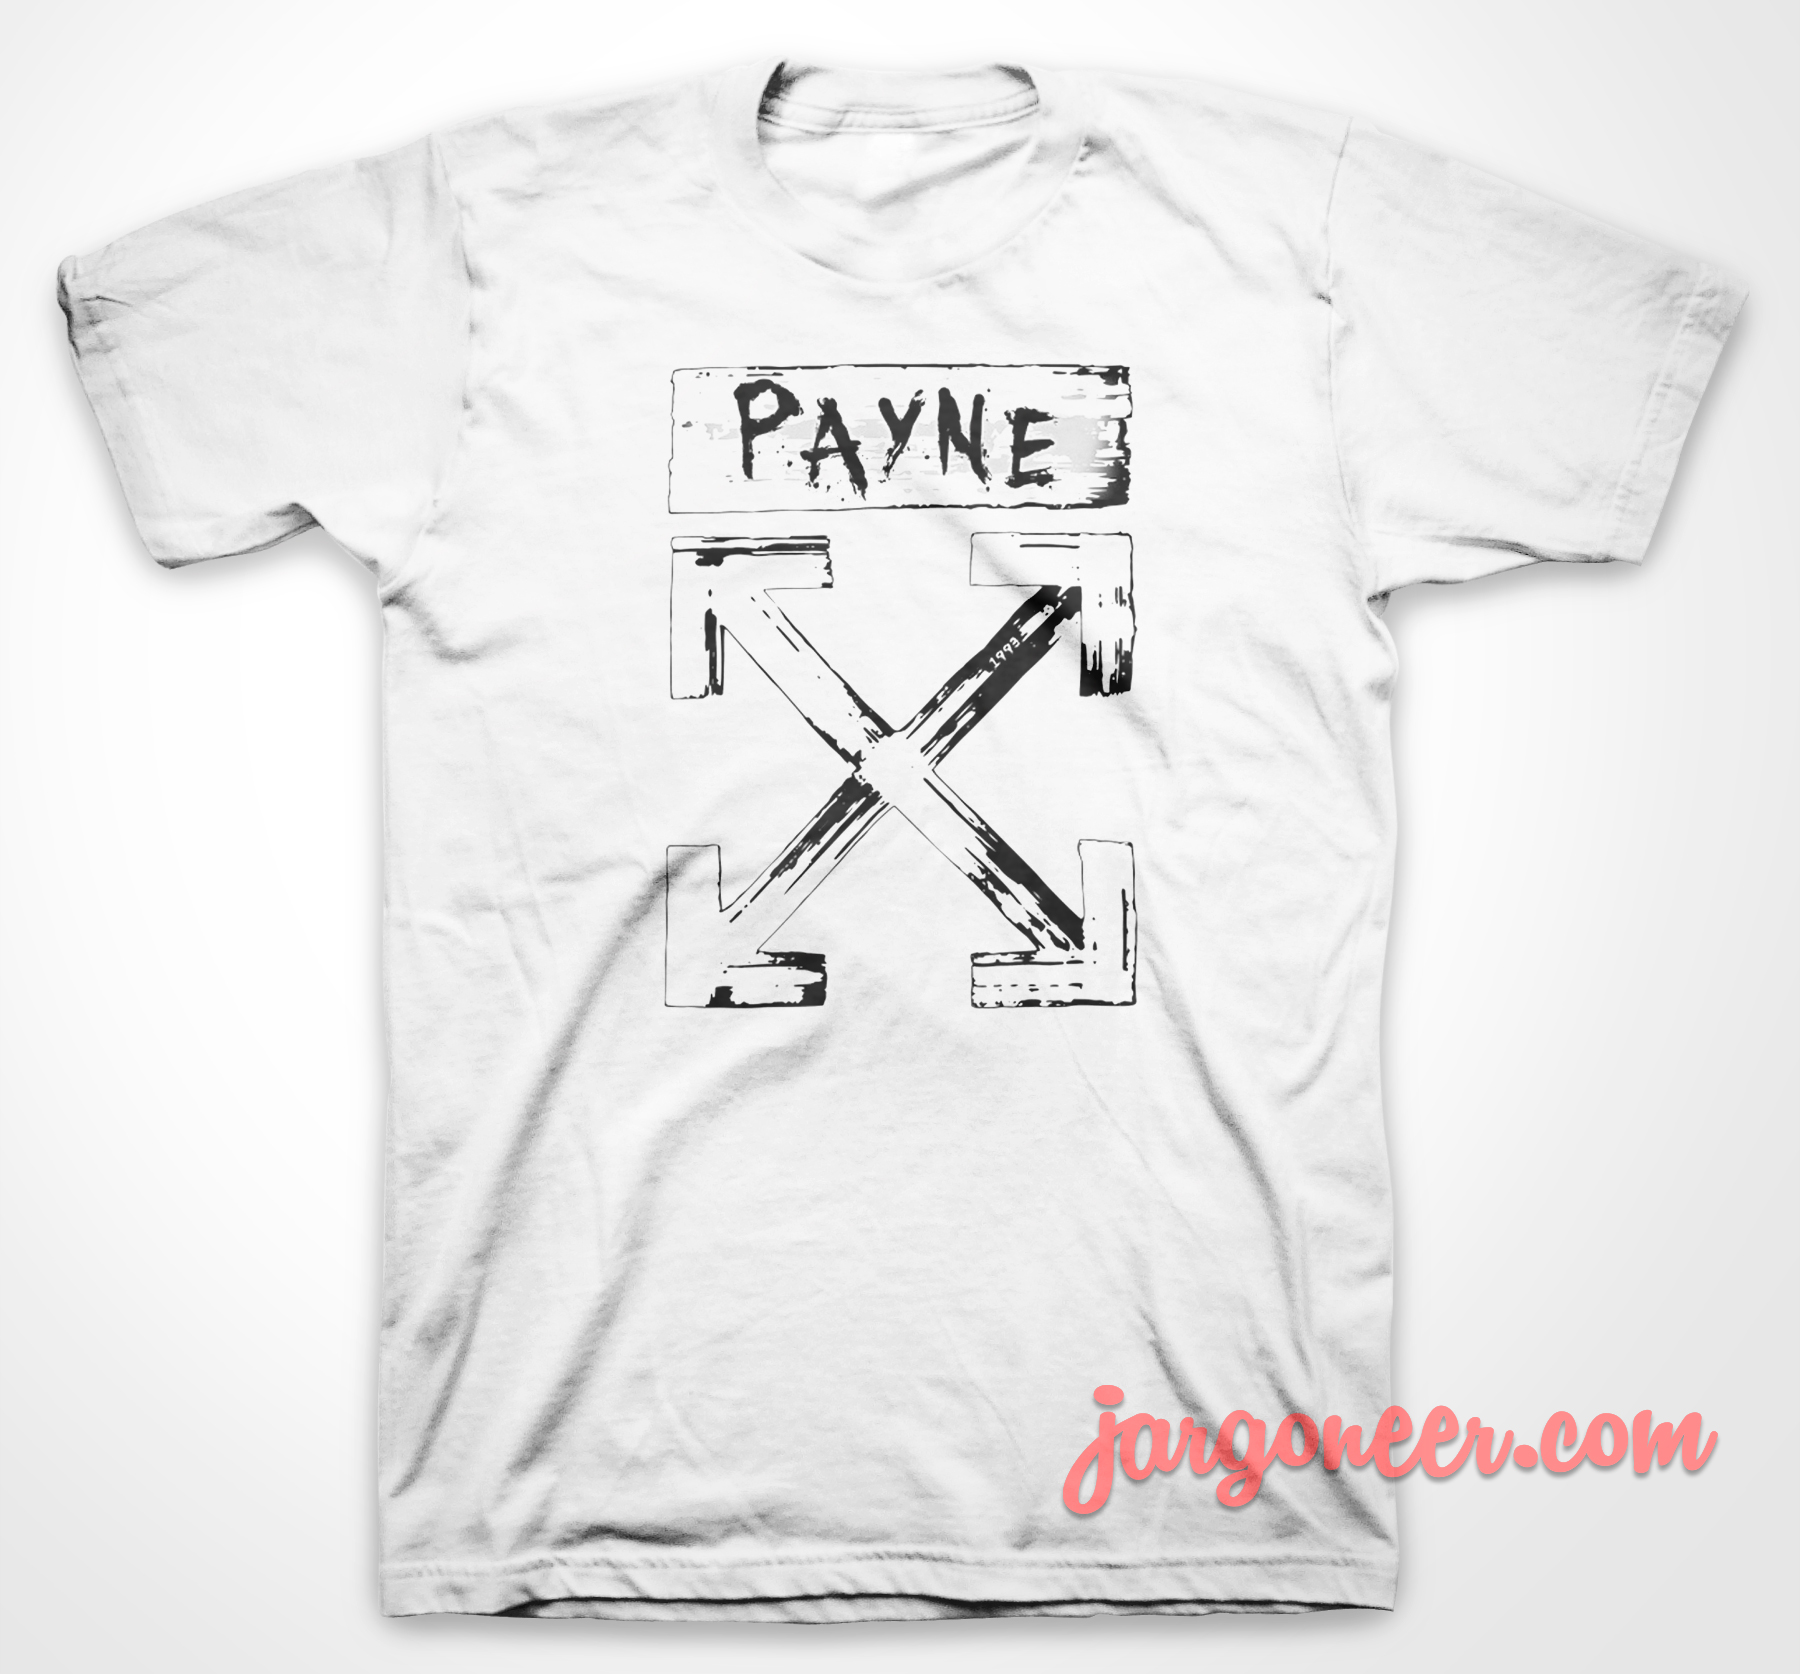 Liam Payne Cross - Shop Unique Graphic Cool Shirt Designs